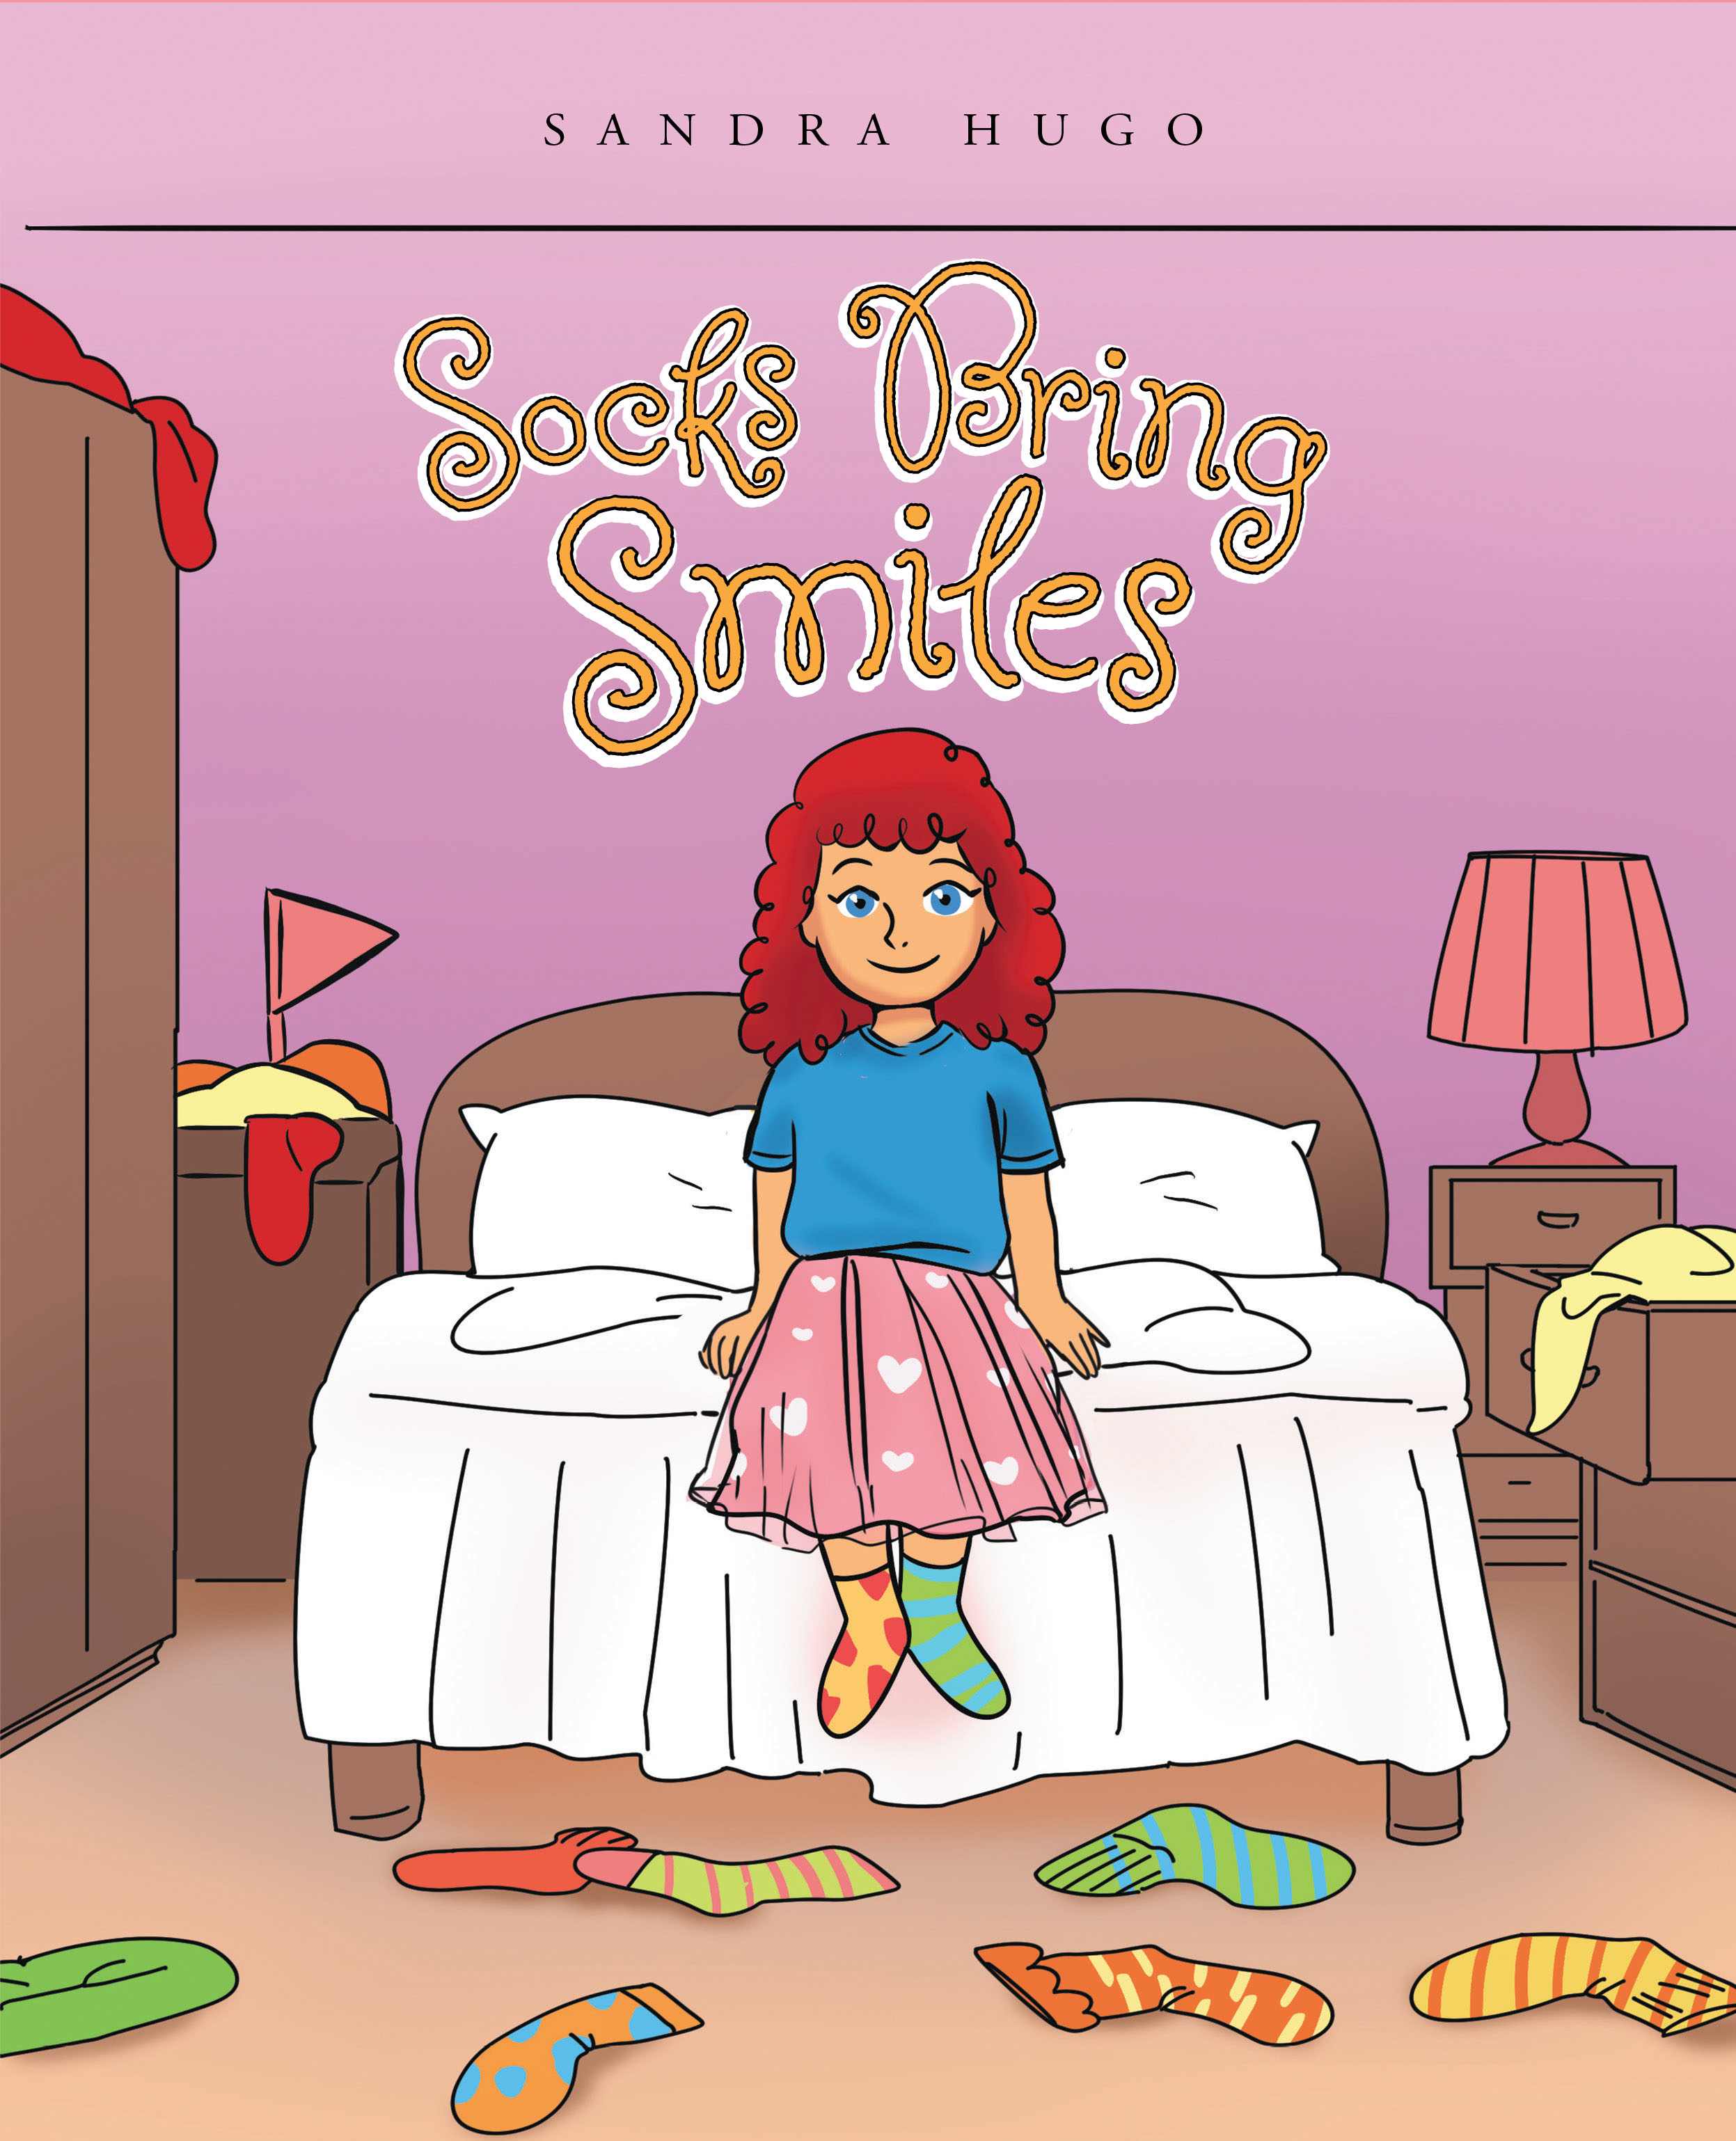 Socks Bring Smiles Cover Image